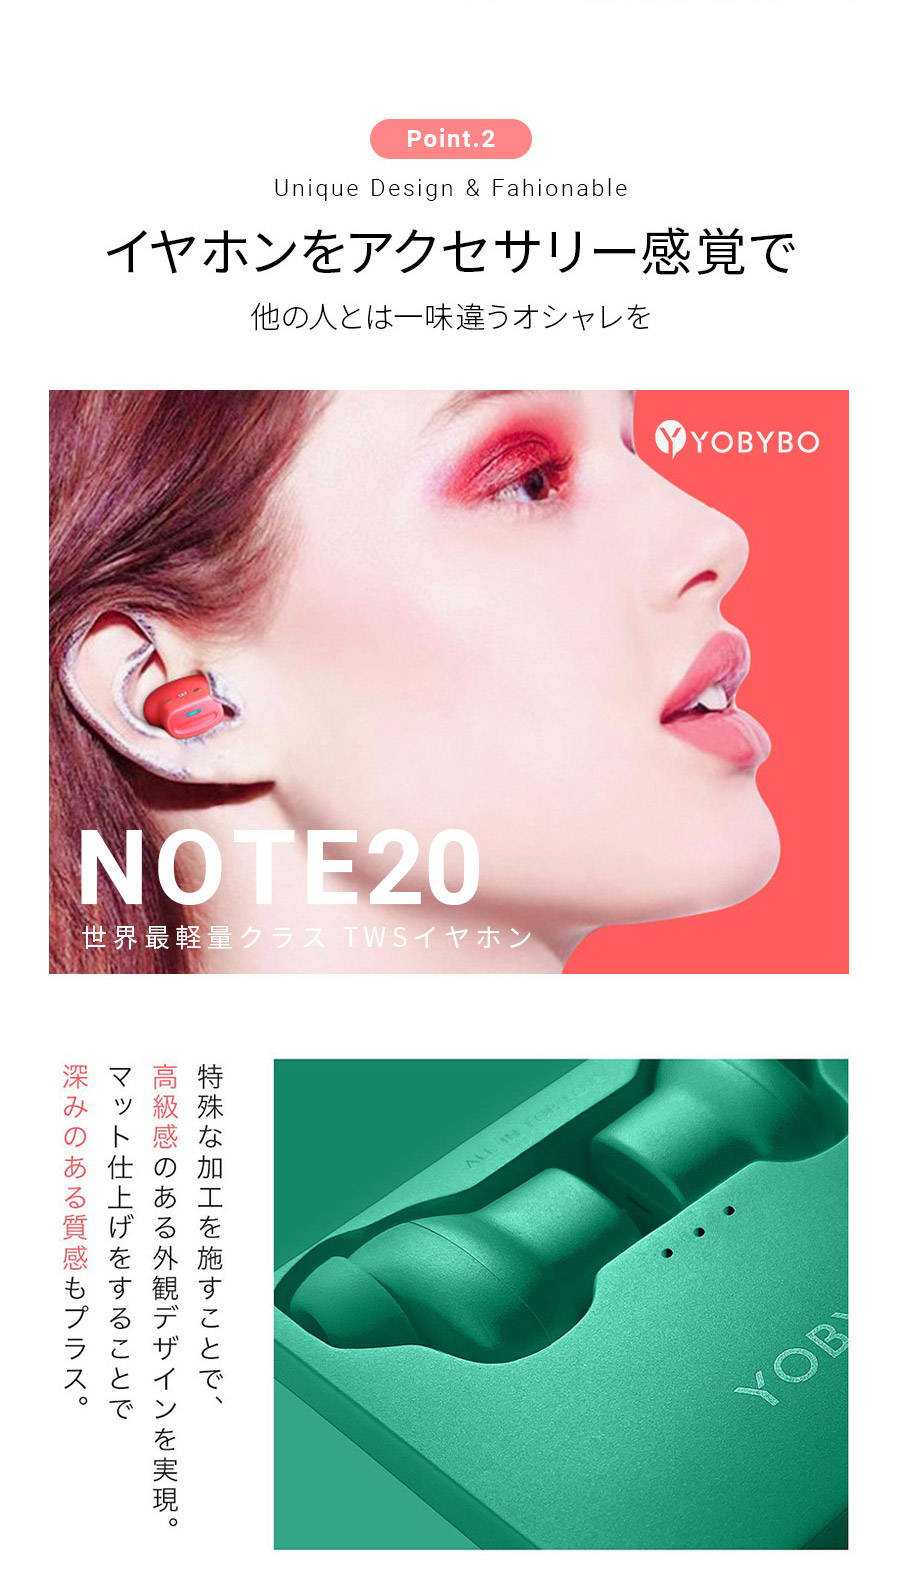 公式】世界最軽量クラス 完全ワイヤレスイヤホン「NOTE20」 – YOBYBO Japan